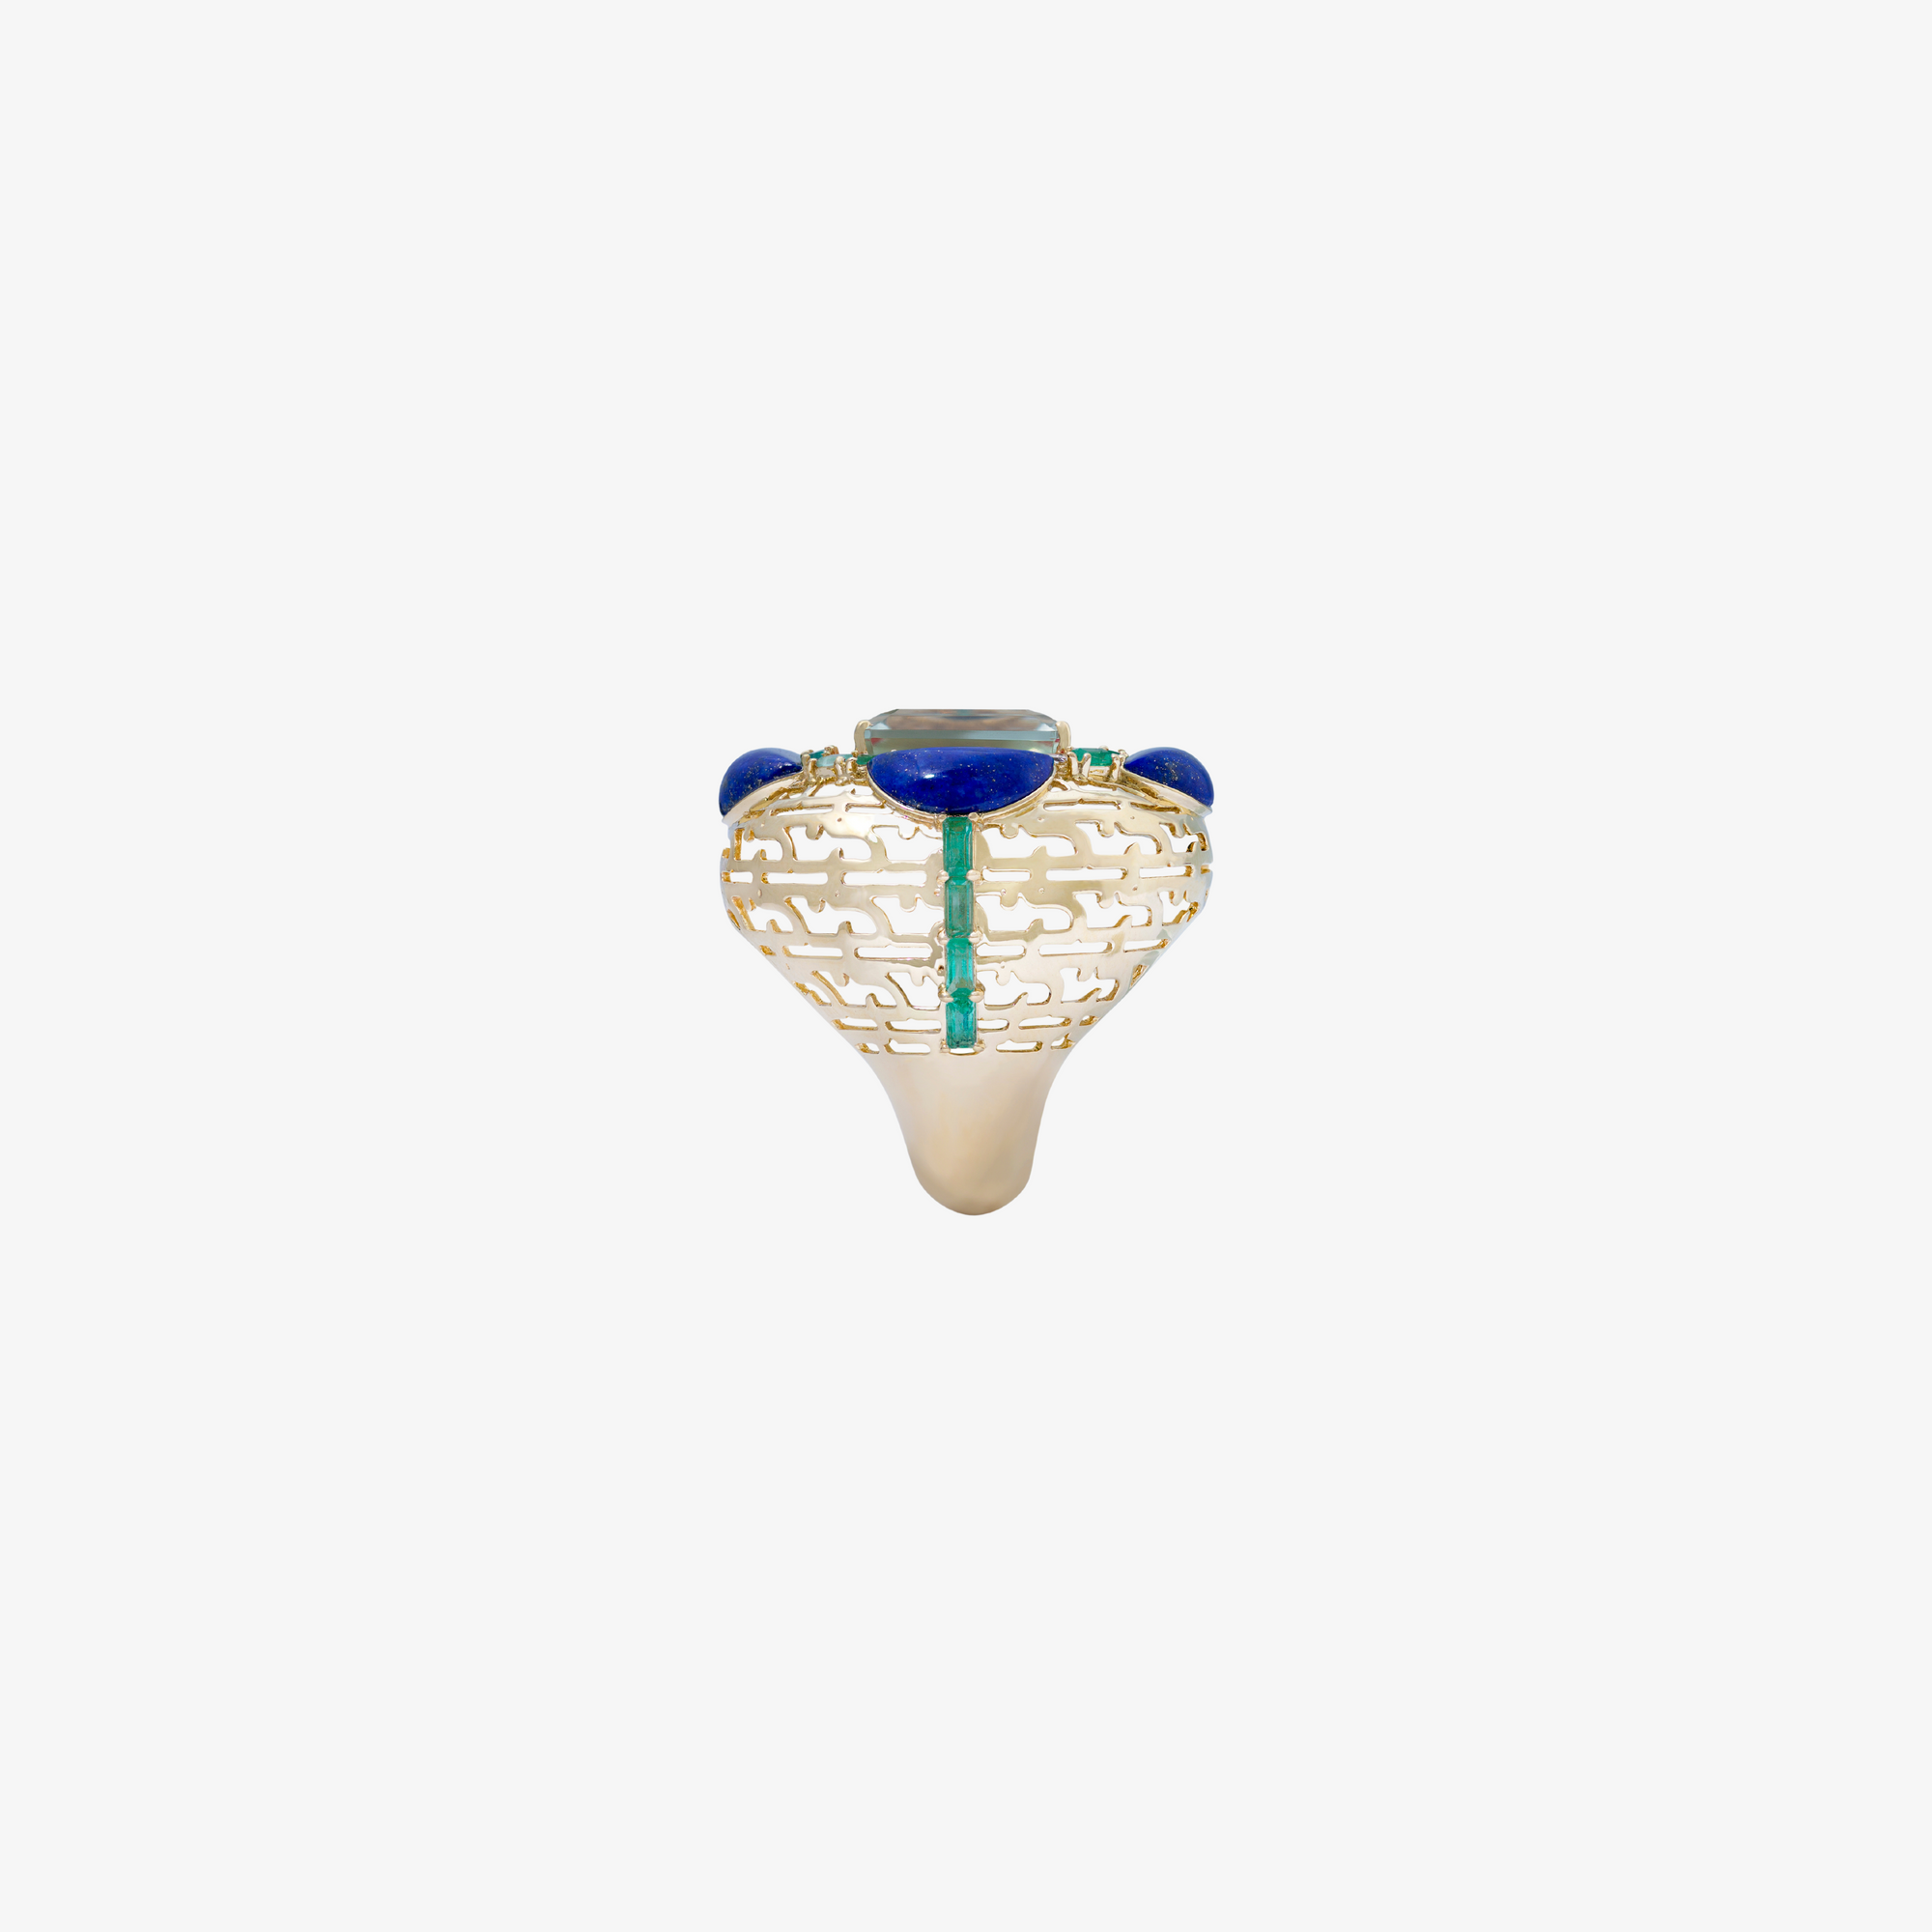 HAWA - 18K Gold, Lapis Lazuli, Aquamarine & Emerald Ring